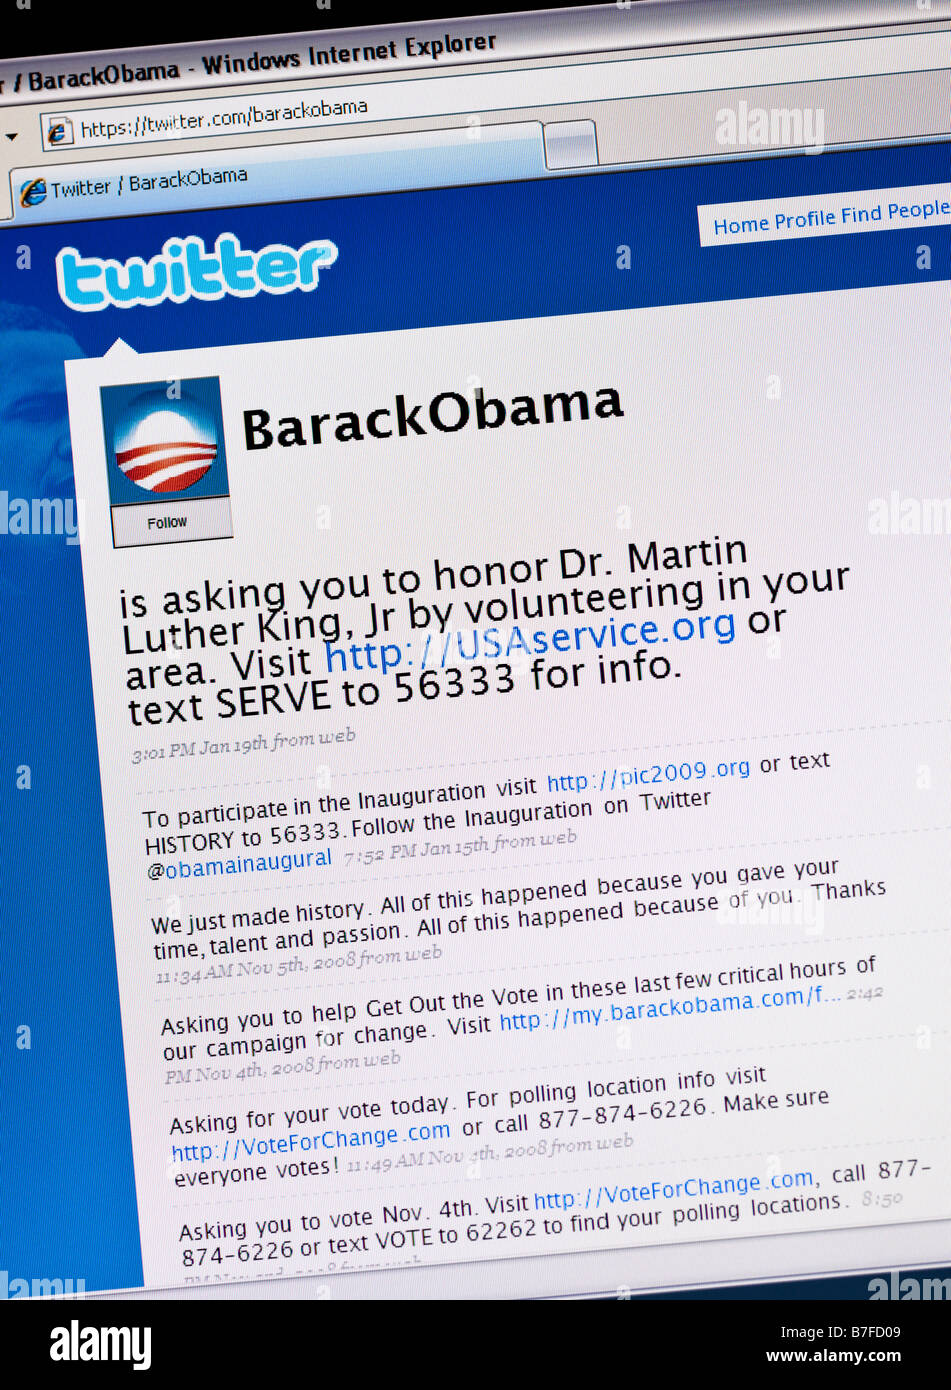 Twitter Social Networking Site Barack Obama twitter Seite mit 'Tweets' für politische Kampagnen während seiner Ausführung für Präsident der USA verwendet Stockfoto